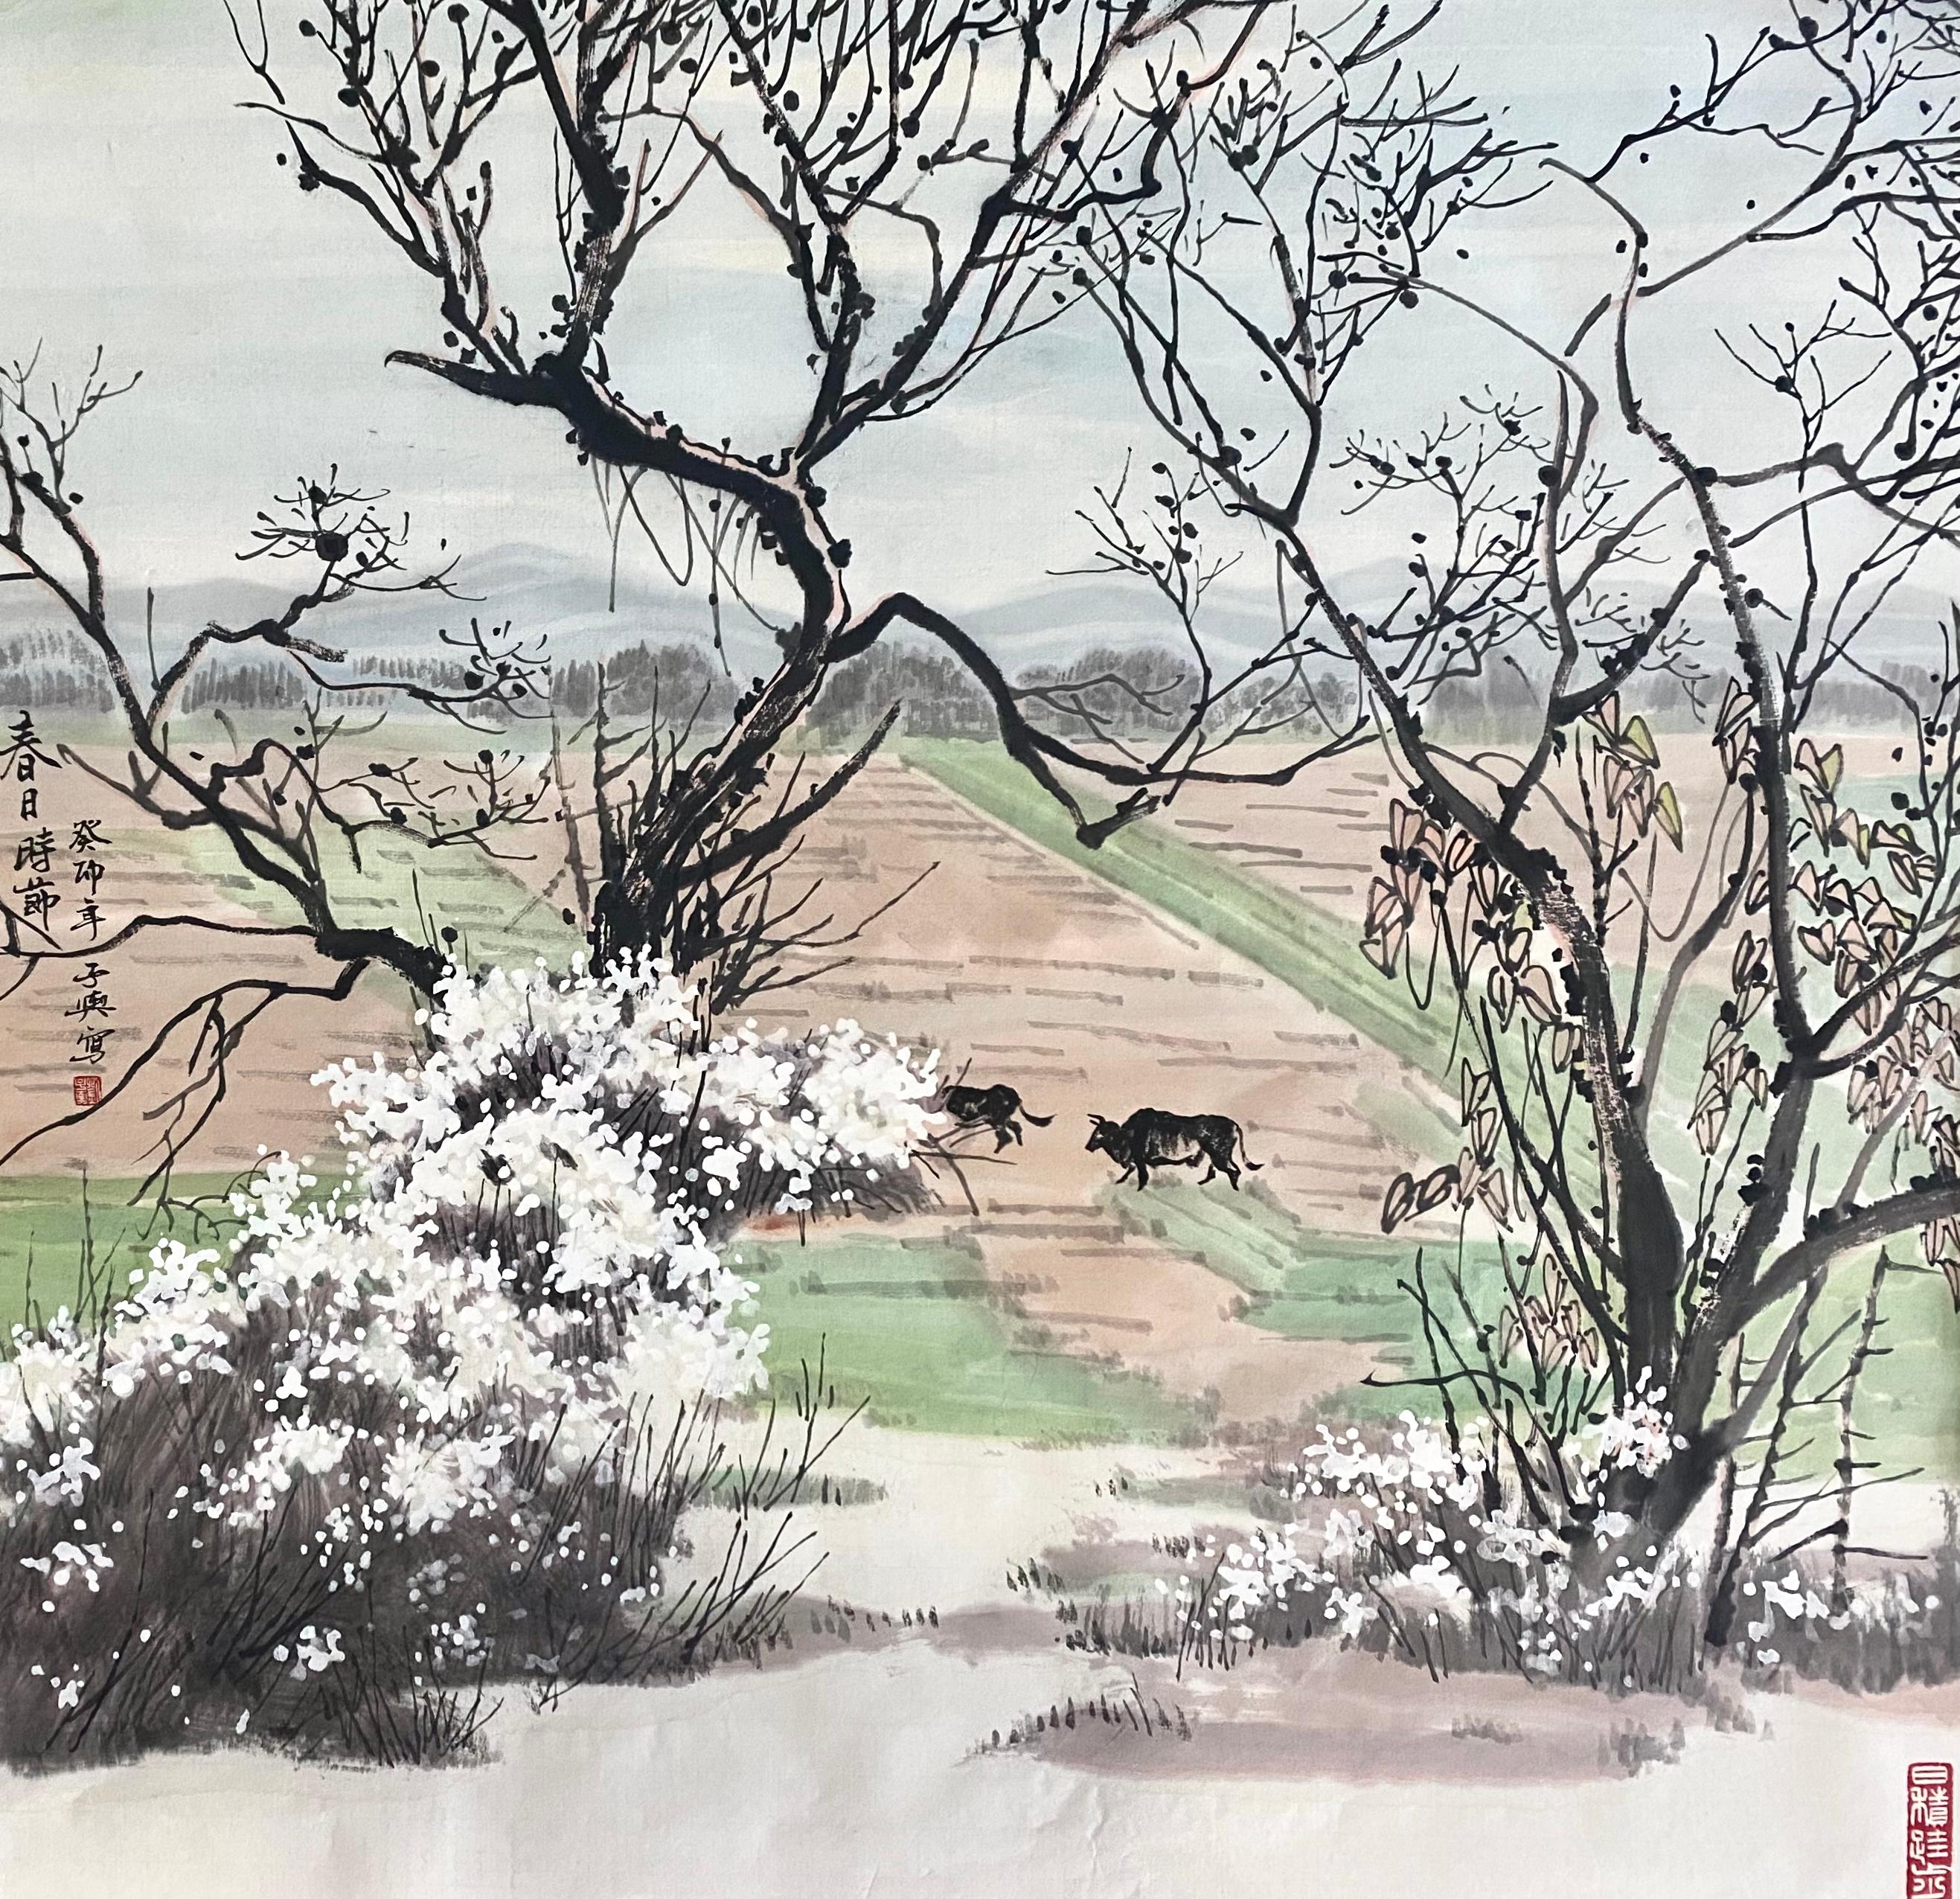 Encre sur papier

Liu Ziyu est une artiste chinoise née en 1978 qui vit et travaille à Pékin, en Chine. Il a obtenu en 2020 un doctorat de l'Académie d'État des arts et de l'industrie de Moscou Stroganov. Il est membre de l'Union créative des